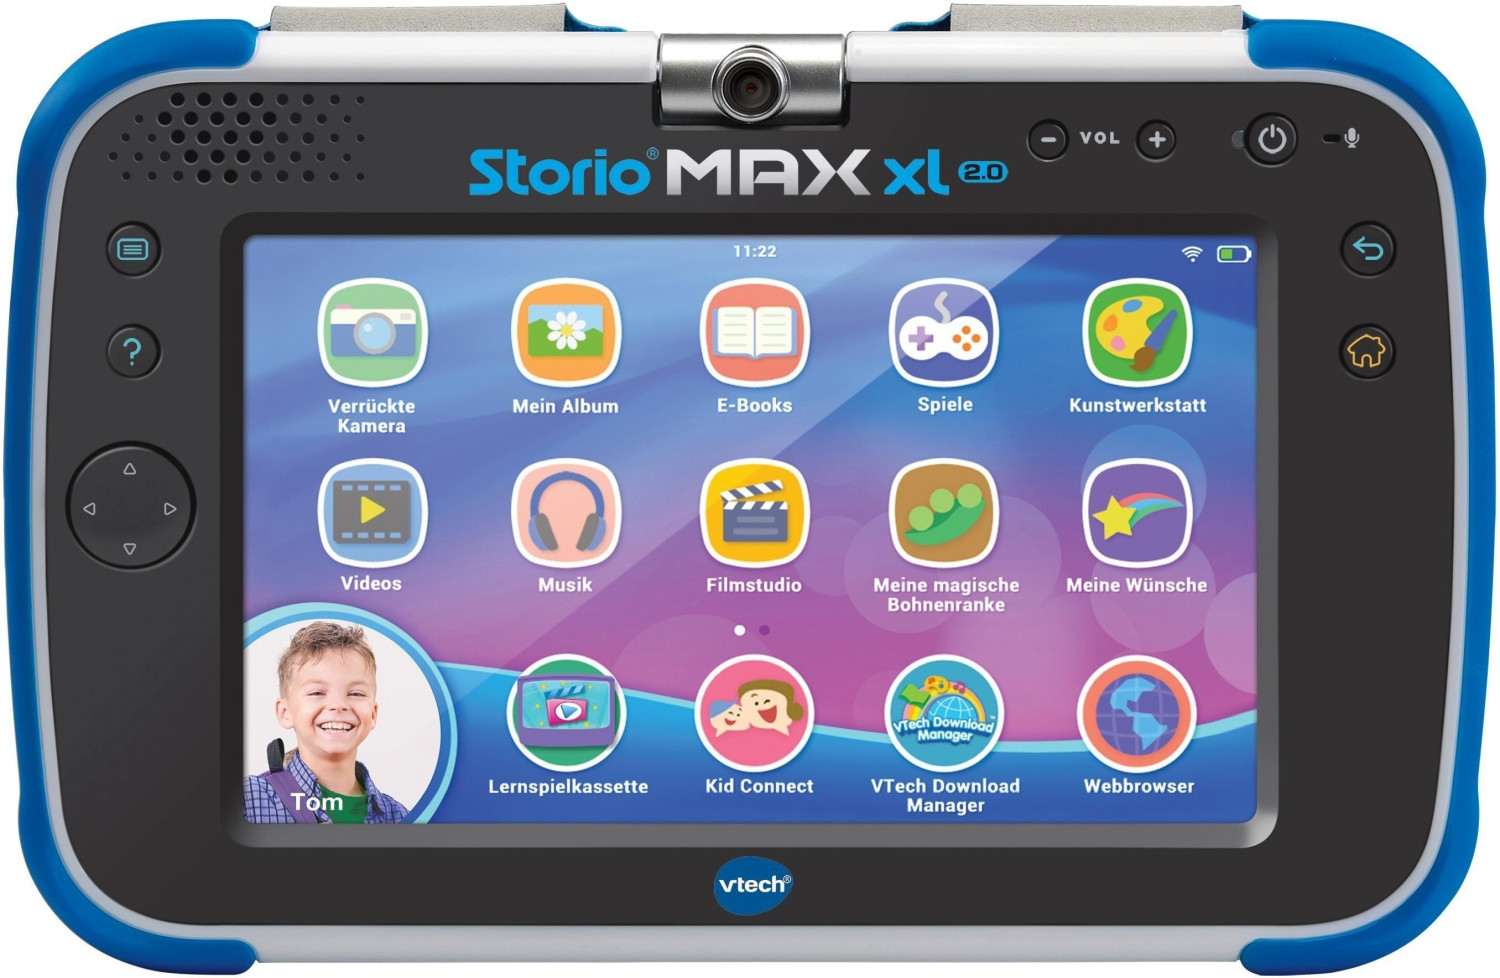 VTECH - Console Storio Max 2.0 5 Bleue - Tablette Éducative